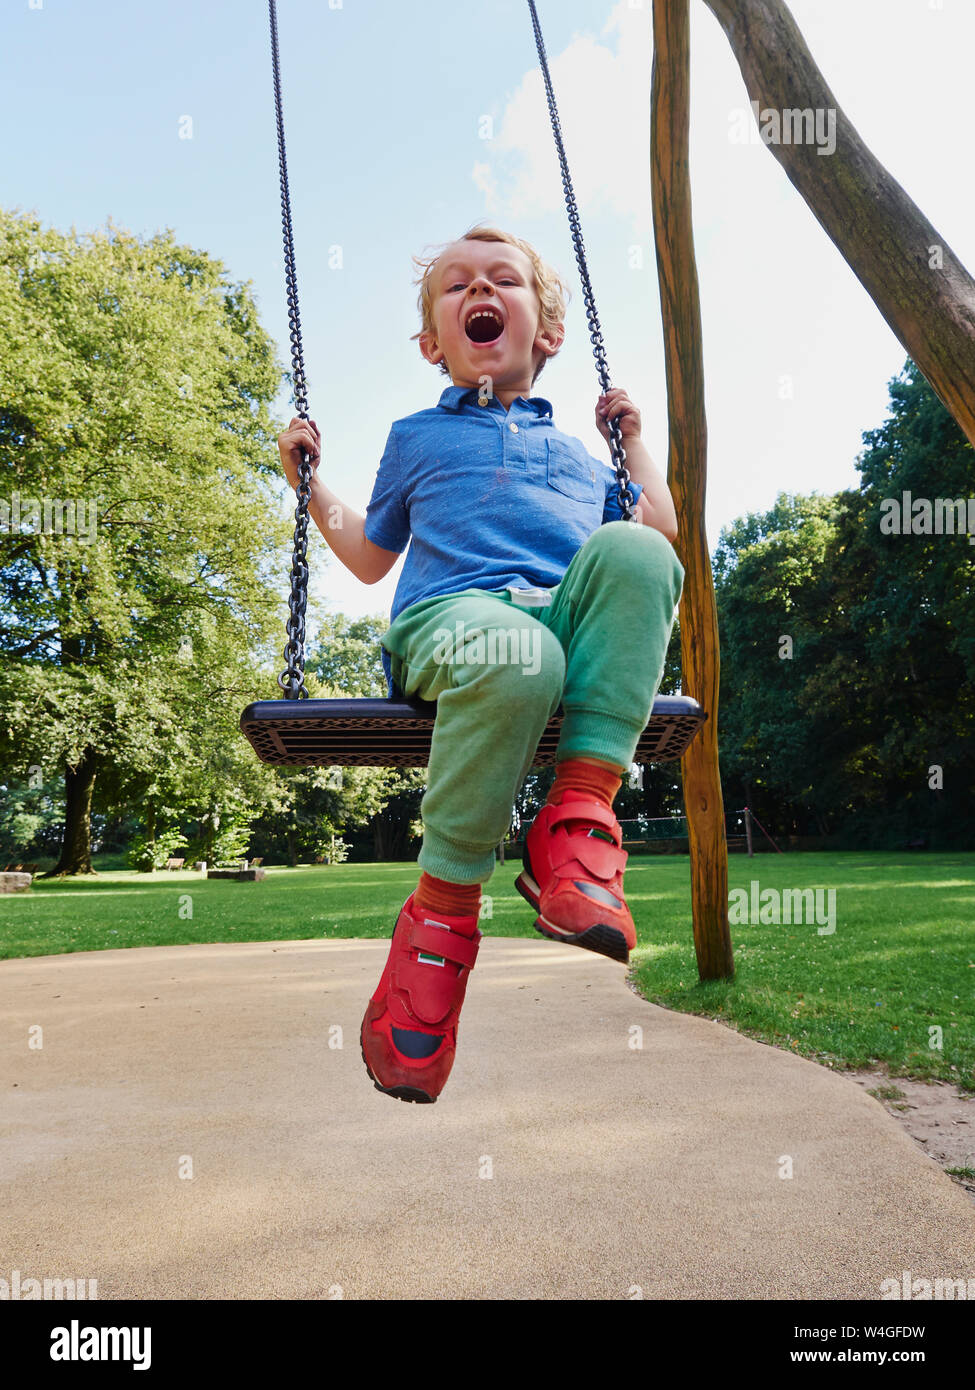 Portrait of screaming little boy on swing Stock Photo